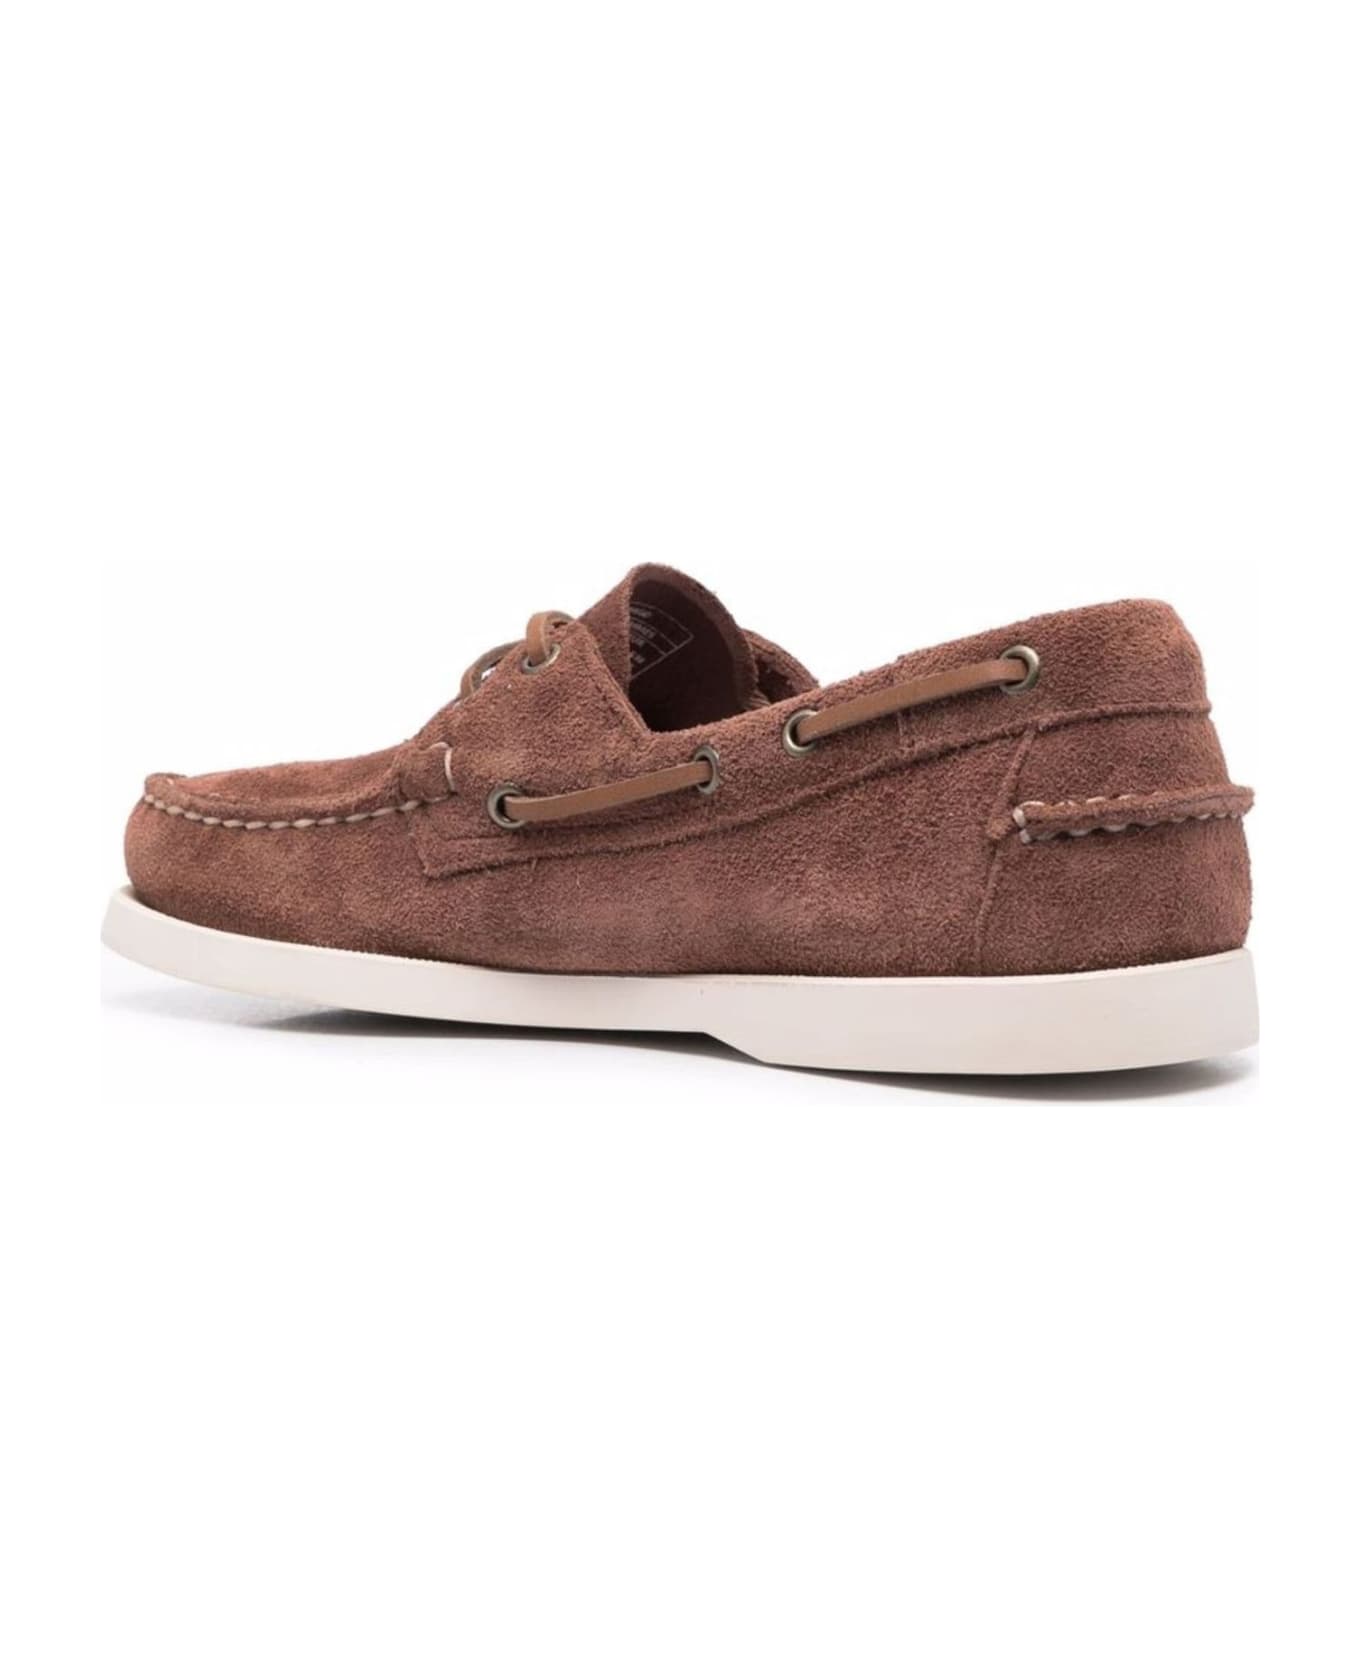 Sebago Flat Shoes Brown - Brown